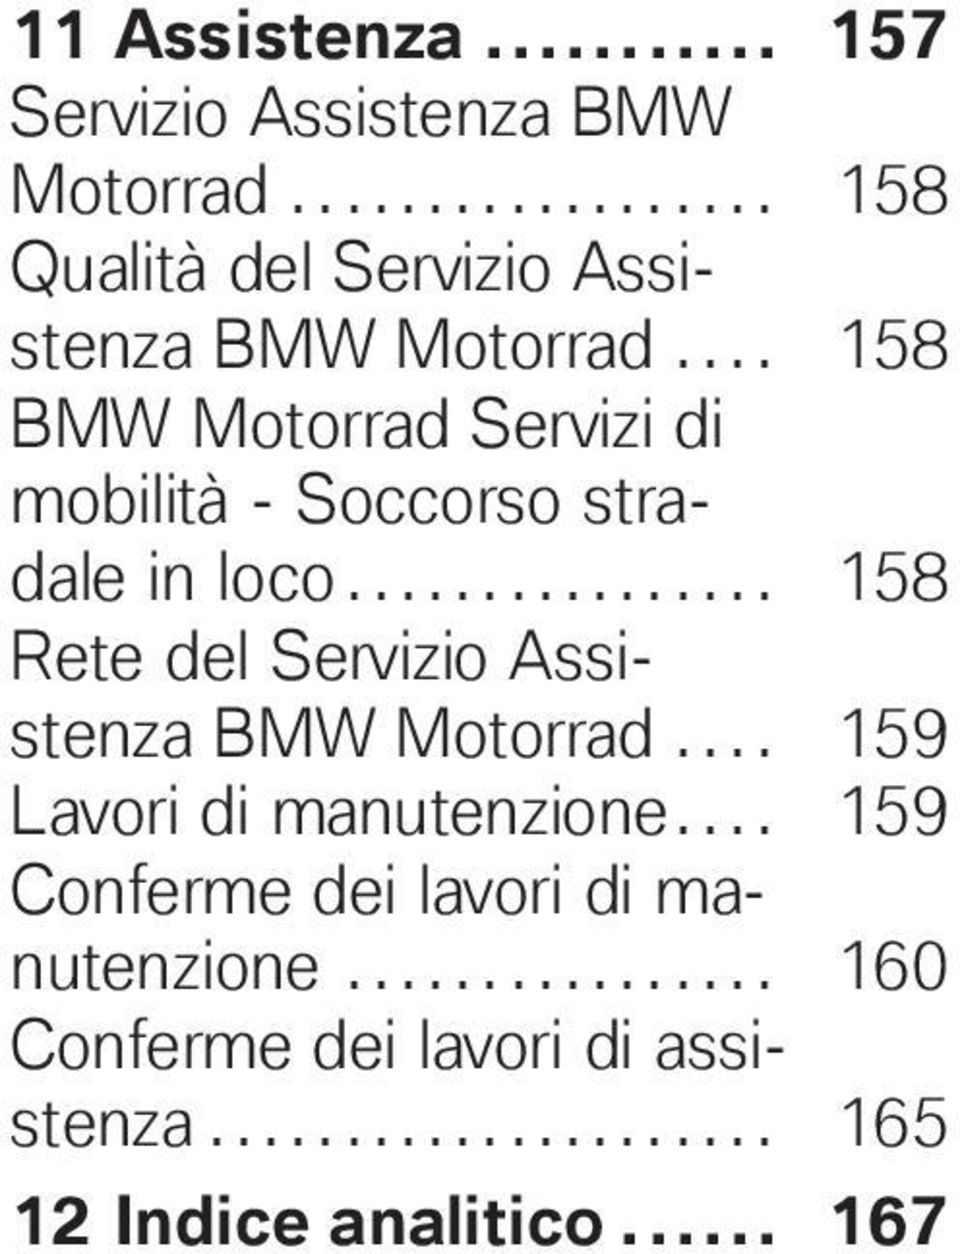 ............... 158 Rete del Servizio Assistenza BMW Motorrad.... 159 Lavori di manutenzione.